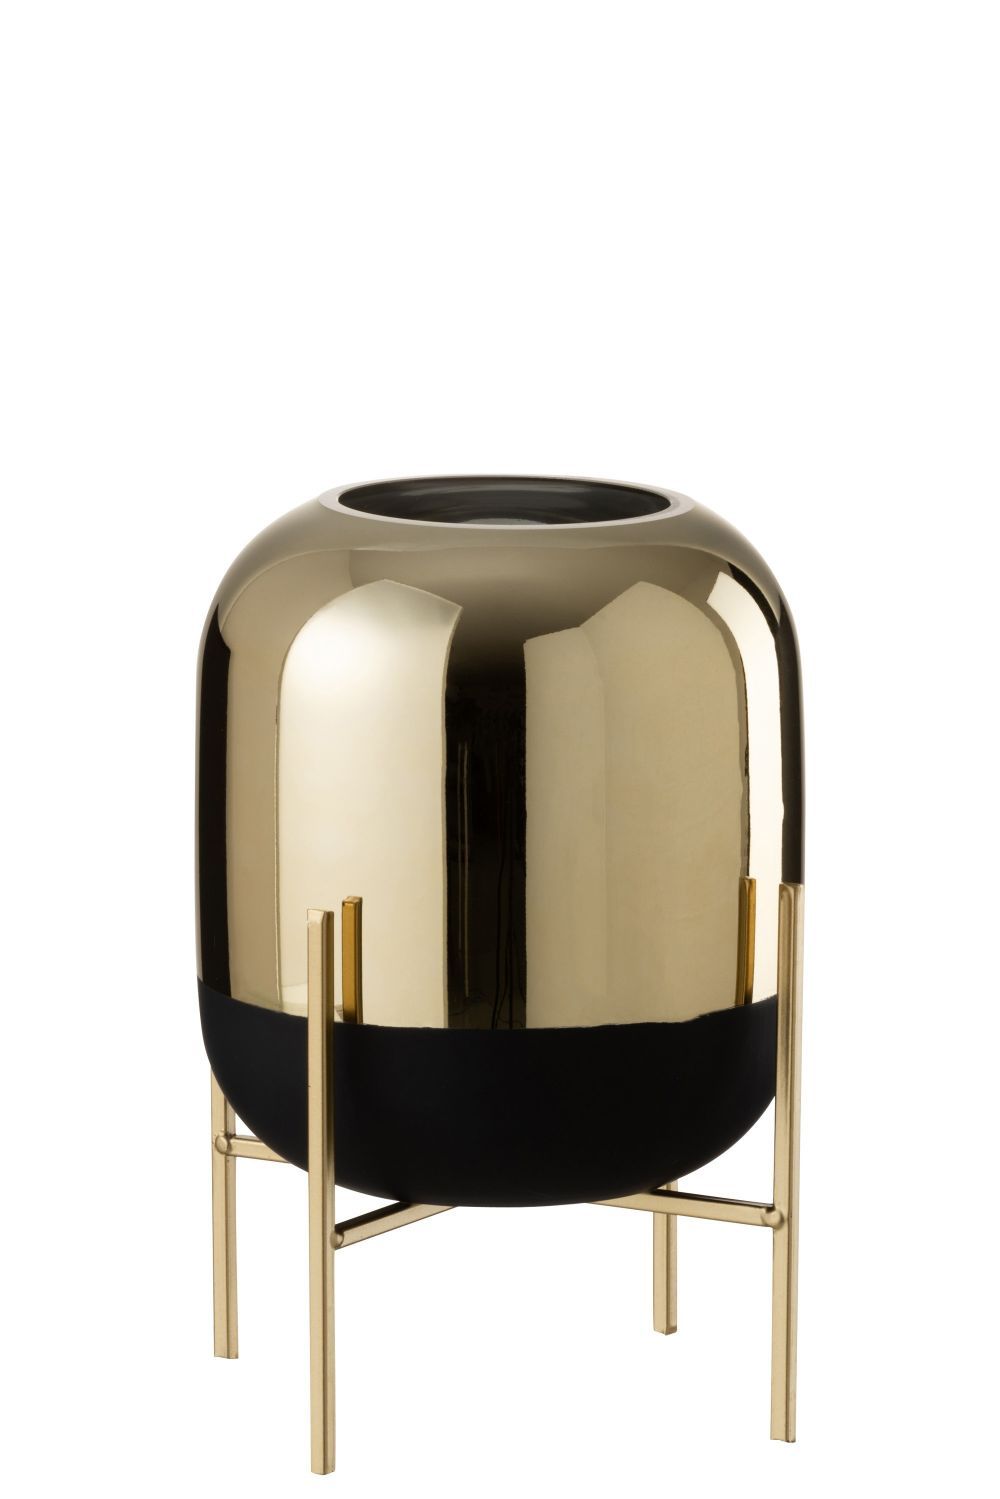 Skleněná černo-zlatá dekorační váza na podstavci - Ø 20*27cm J-Line by Jolipa - LaHome - vintage dekorace